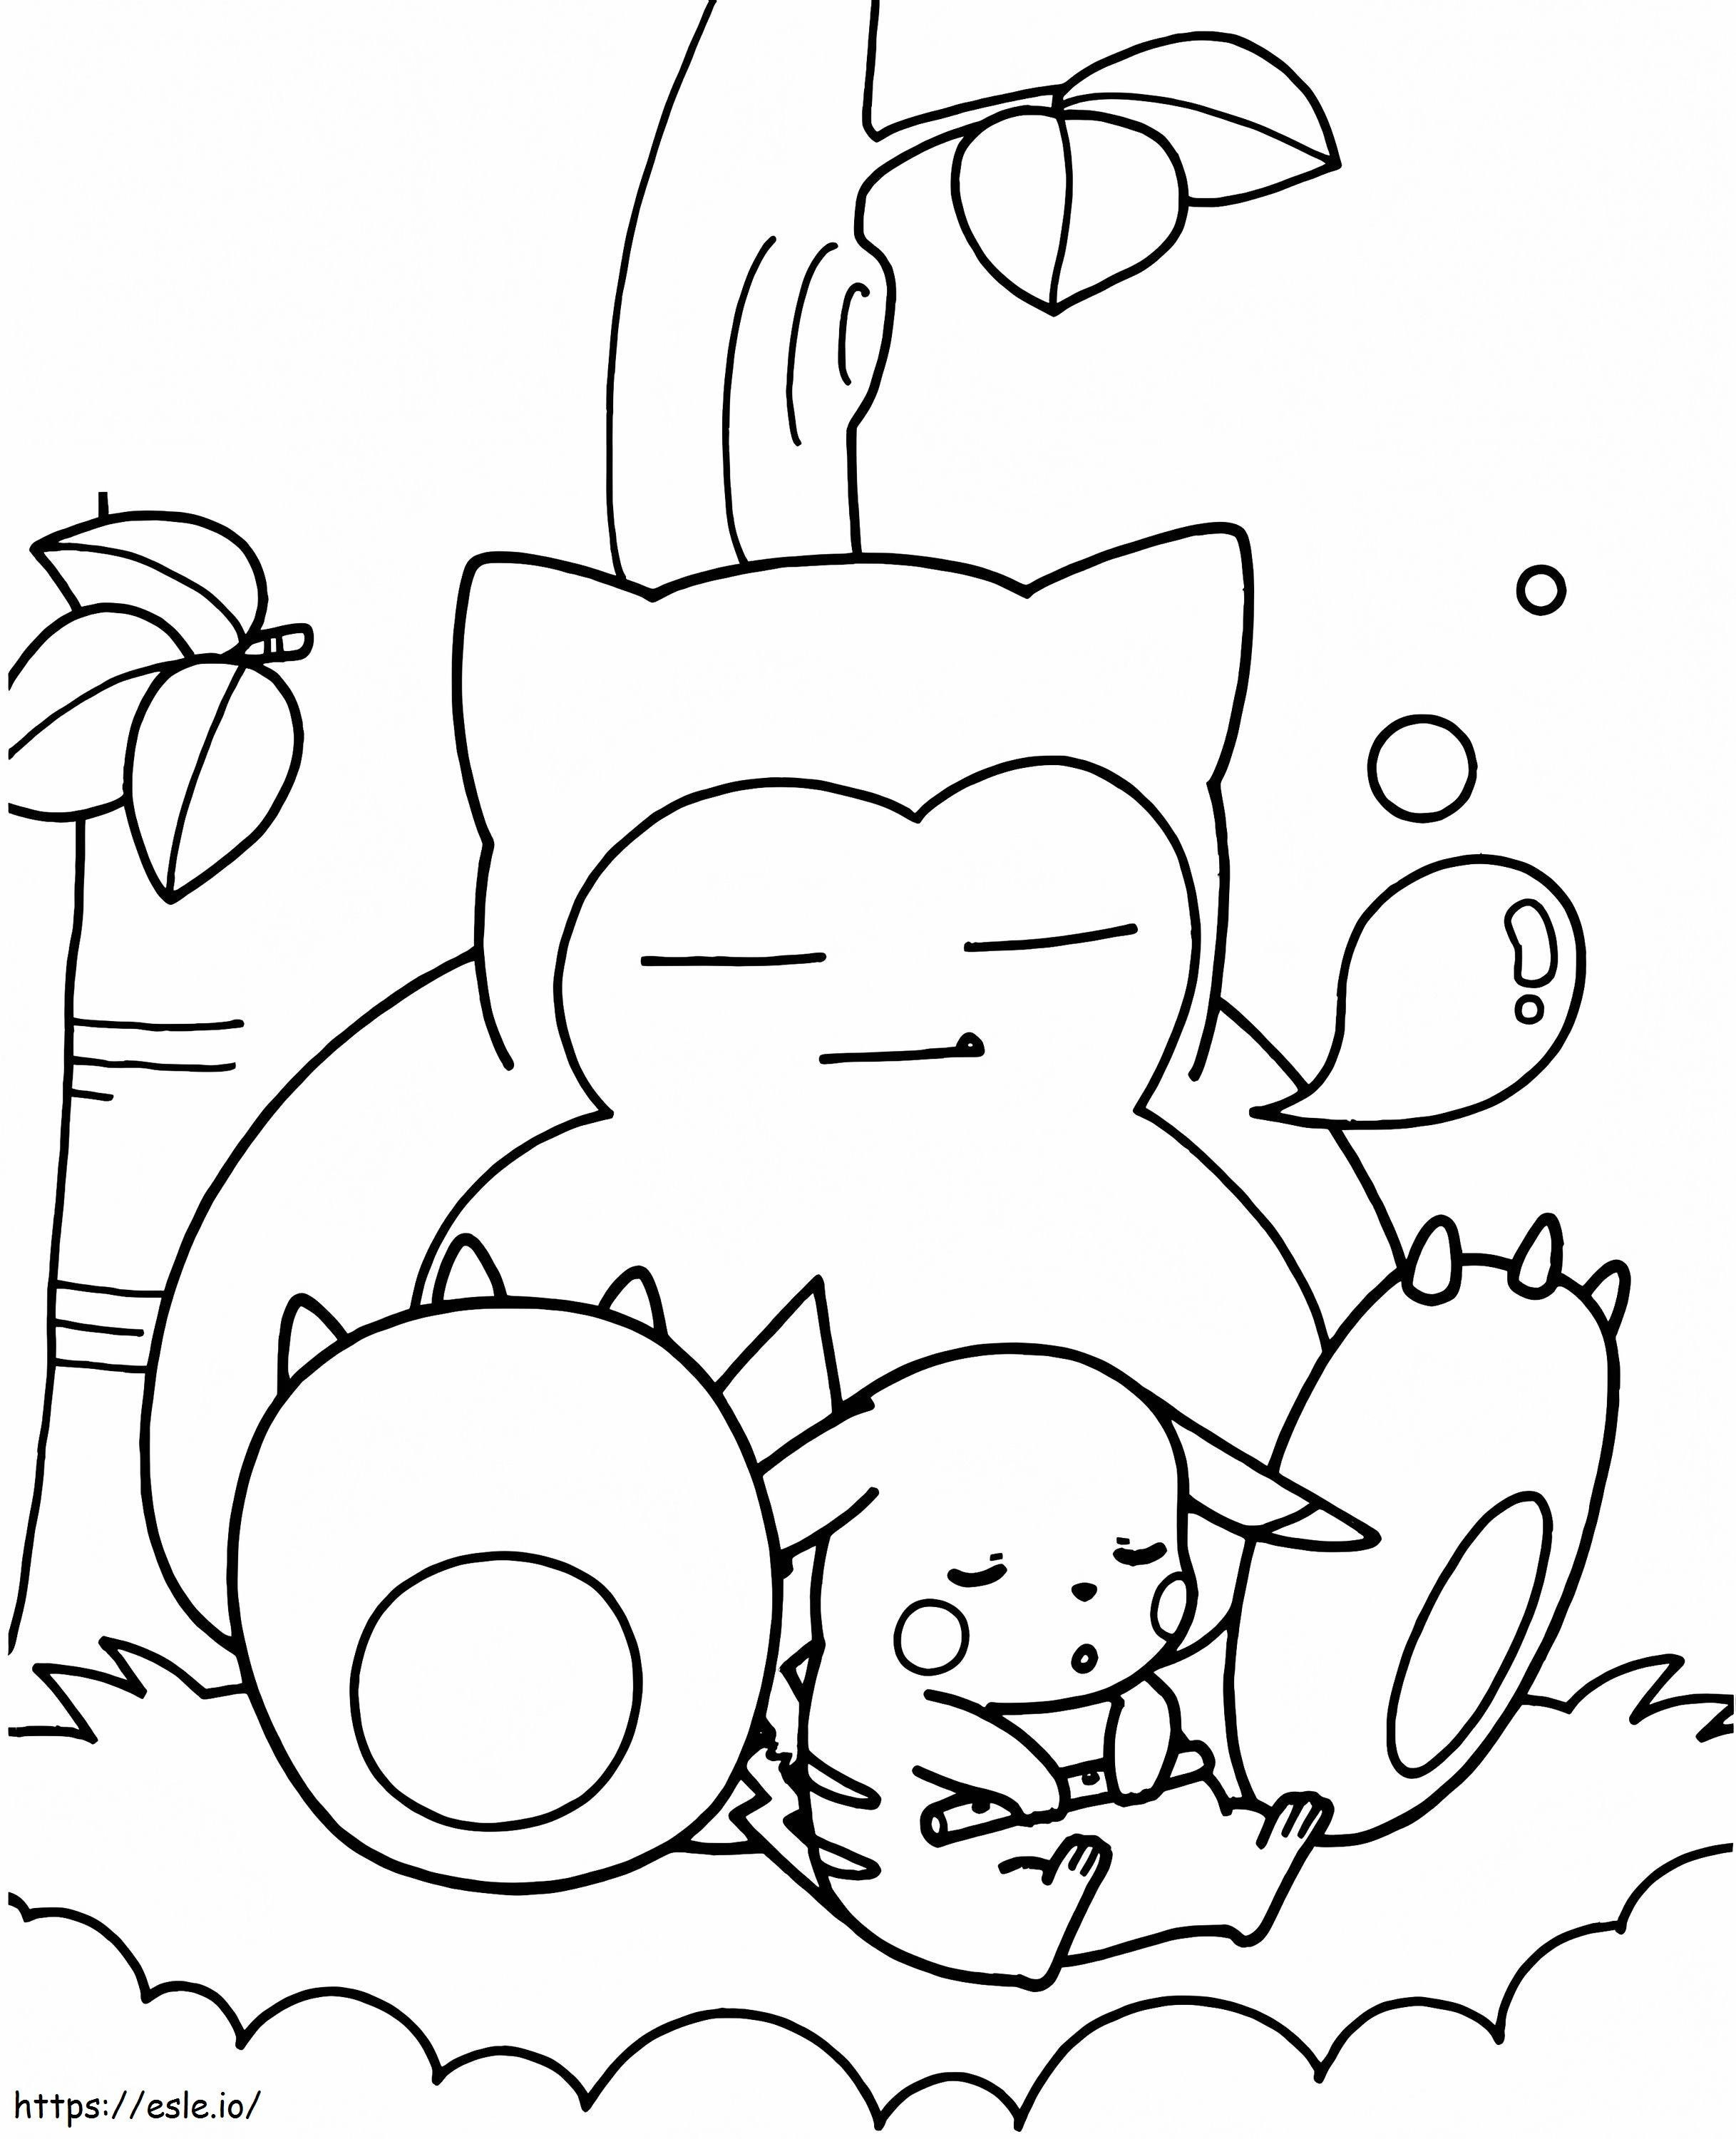 Pikachu und Relaxo ausmalbilder